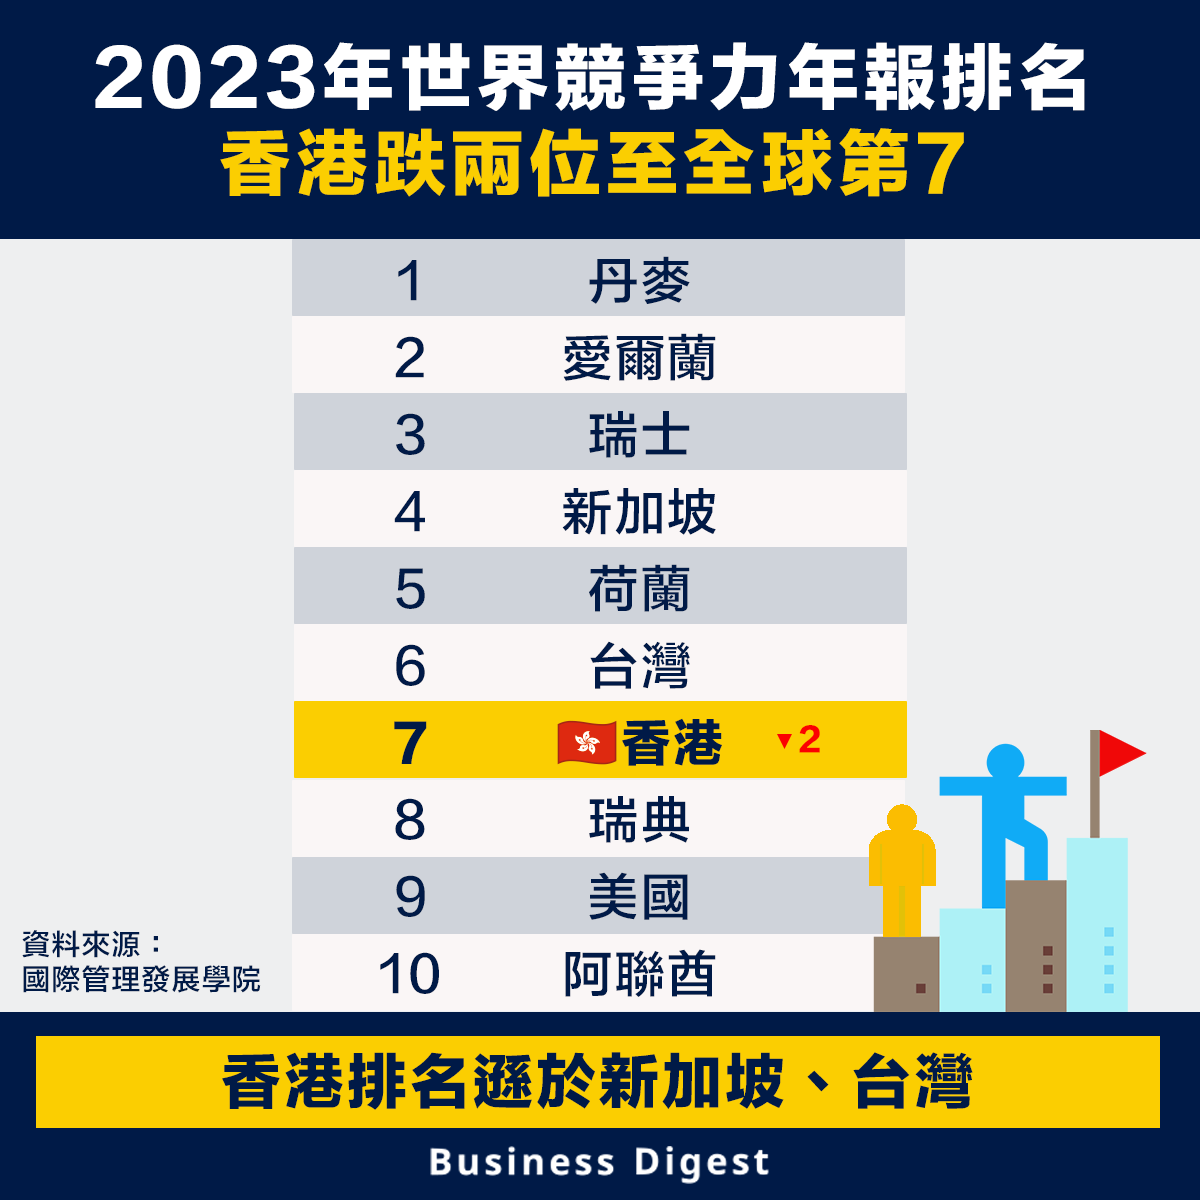 2023年世界競爭力年報排名，香港跌兩位至全球第7